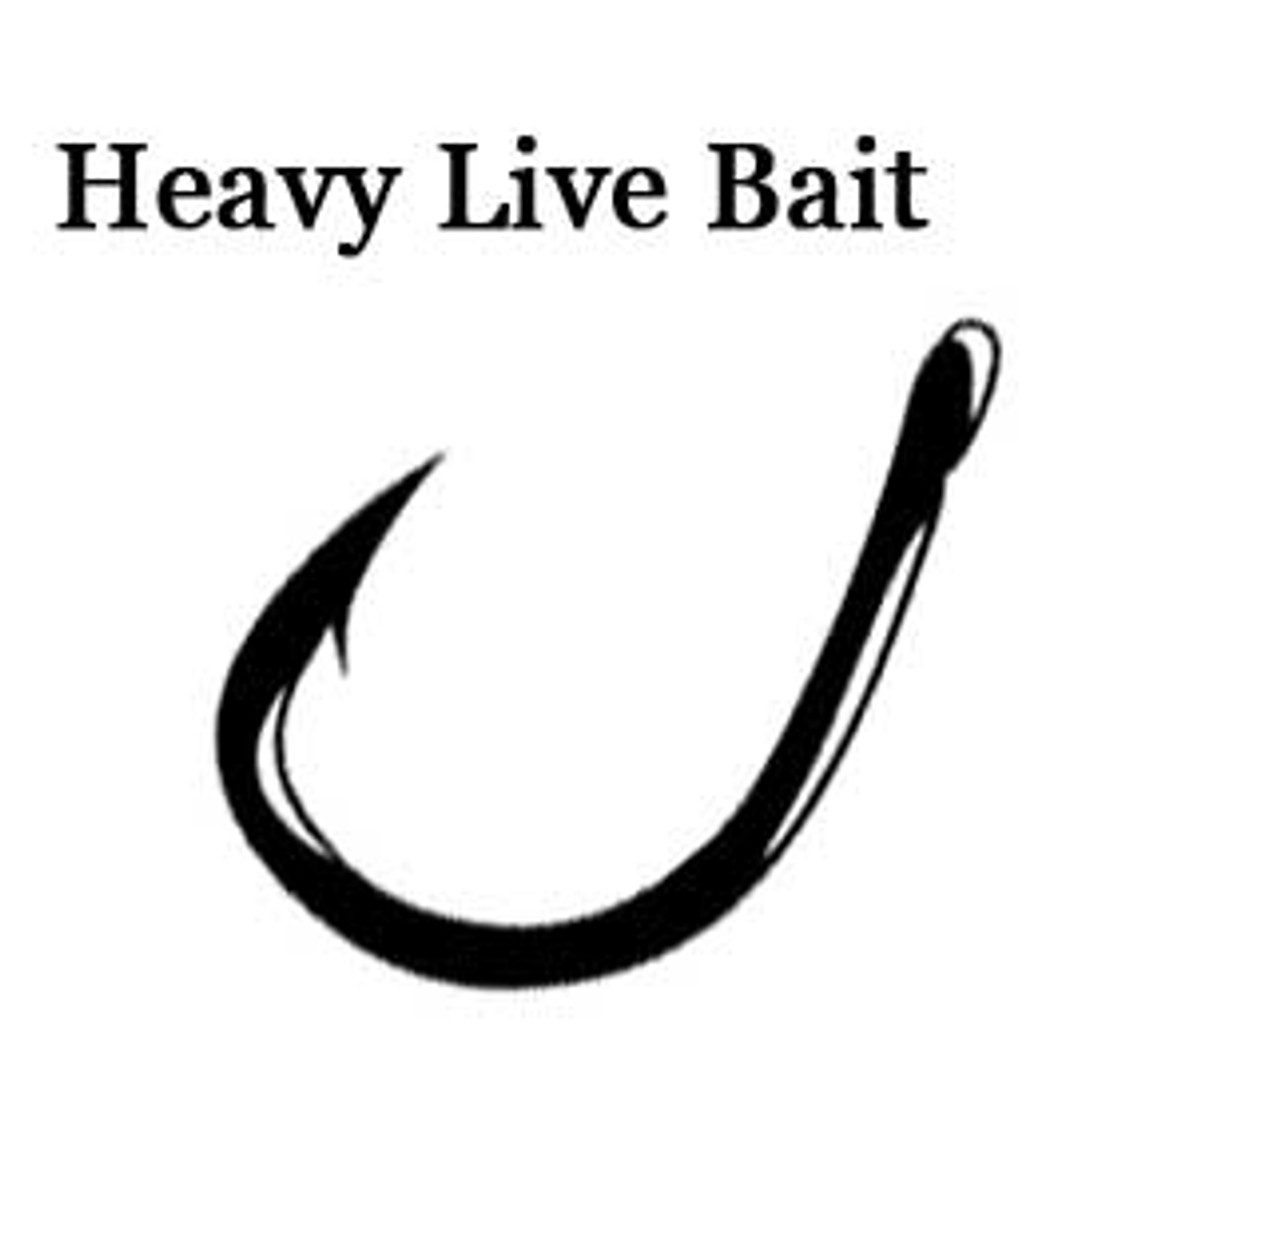 Gamakatsu Live Bait (Heavy Duty) Hook 6/0